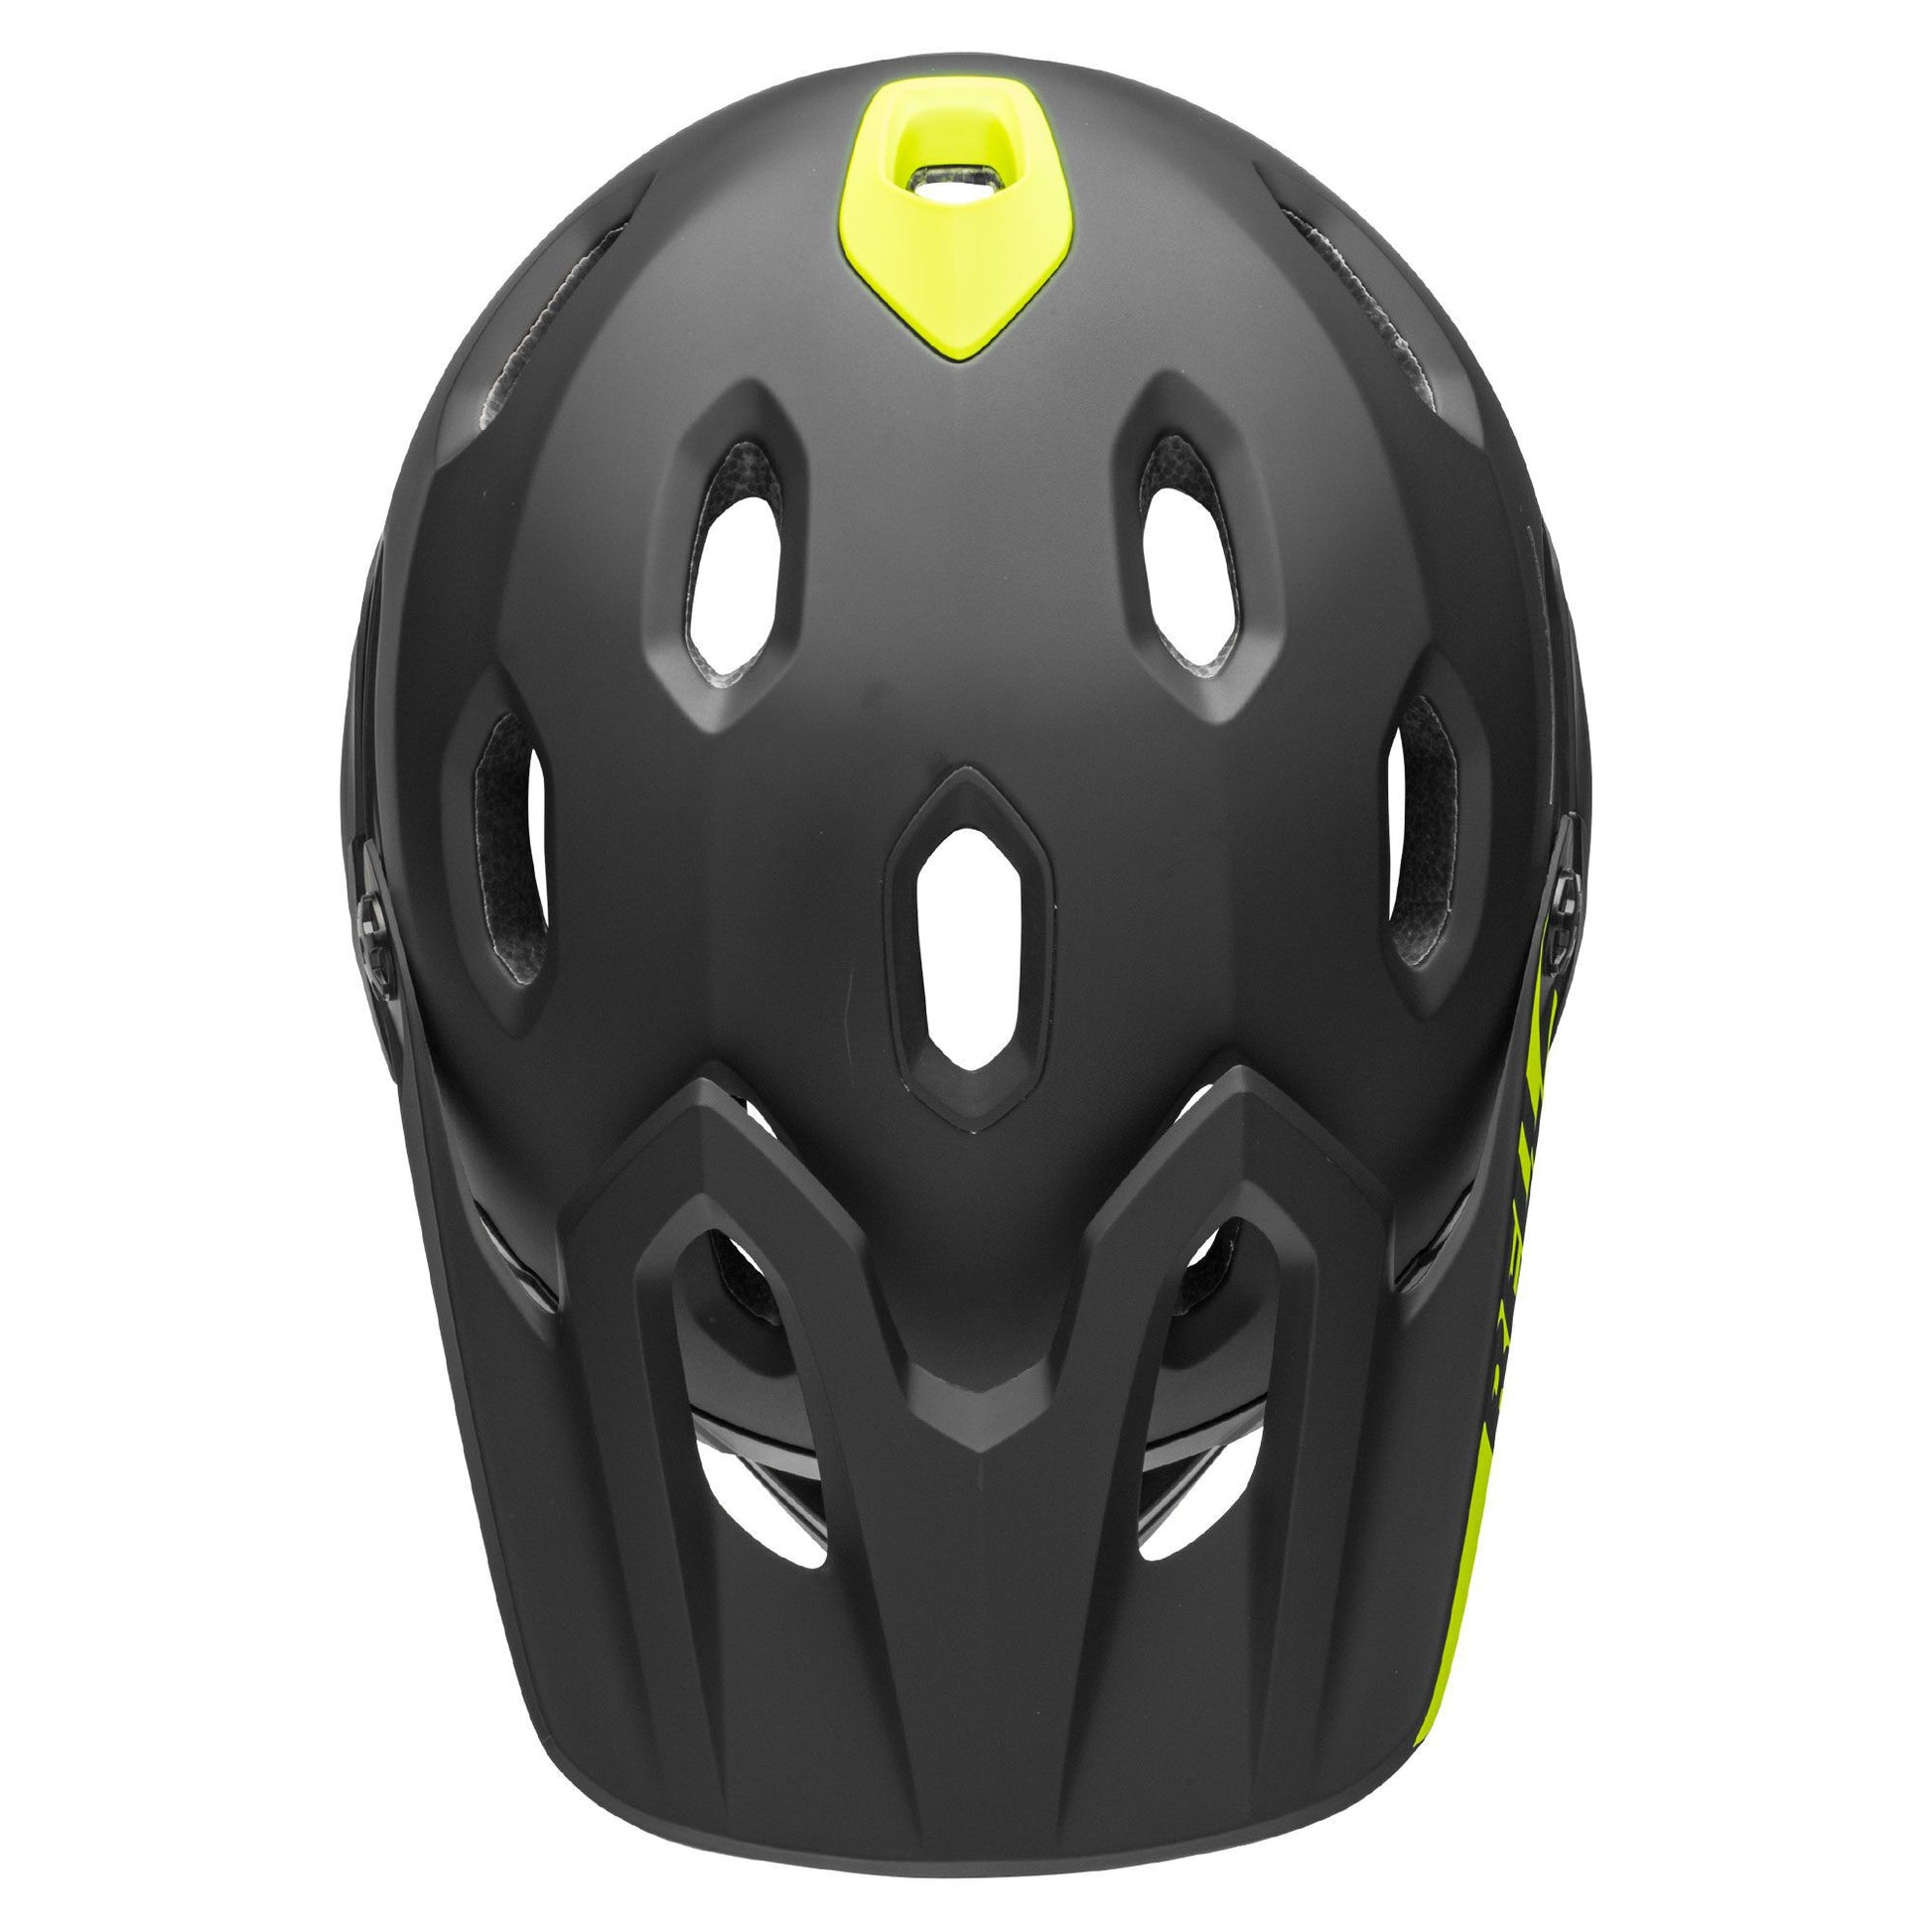 Bell Super DH Spherical Helmet Matte/Gloss Black Bike Helmets